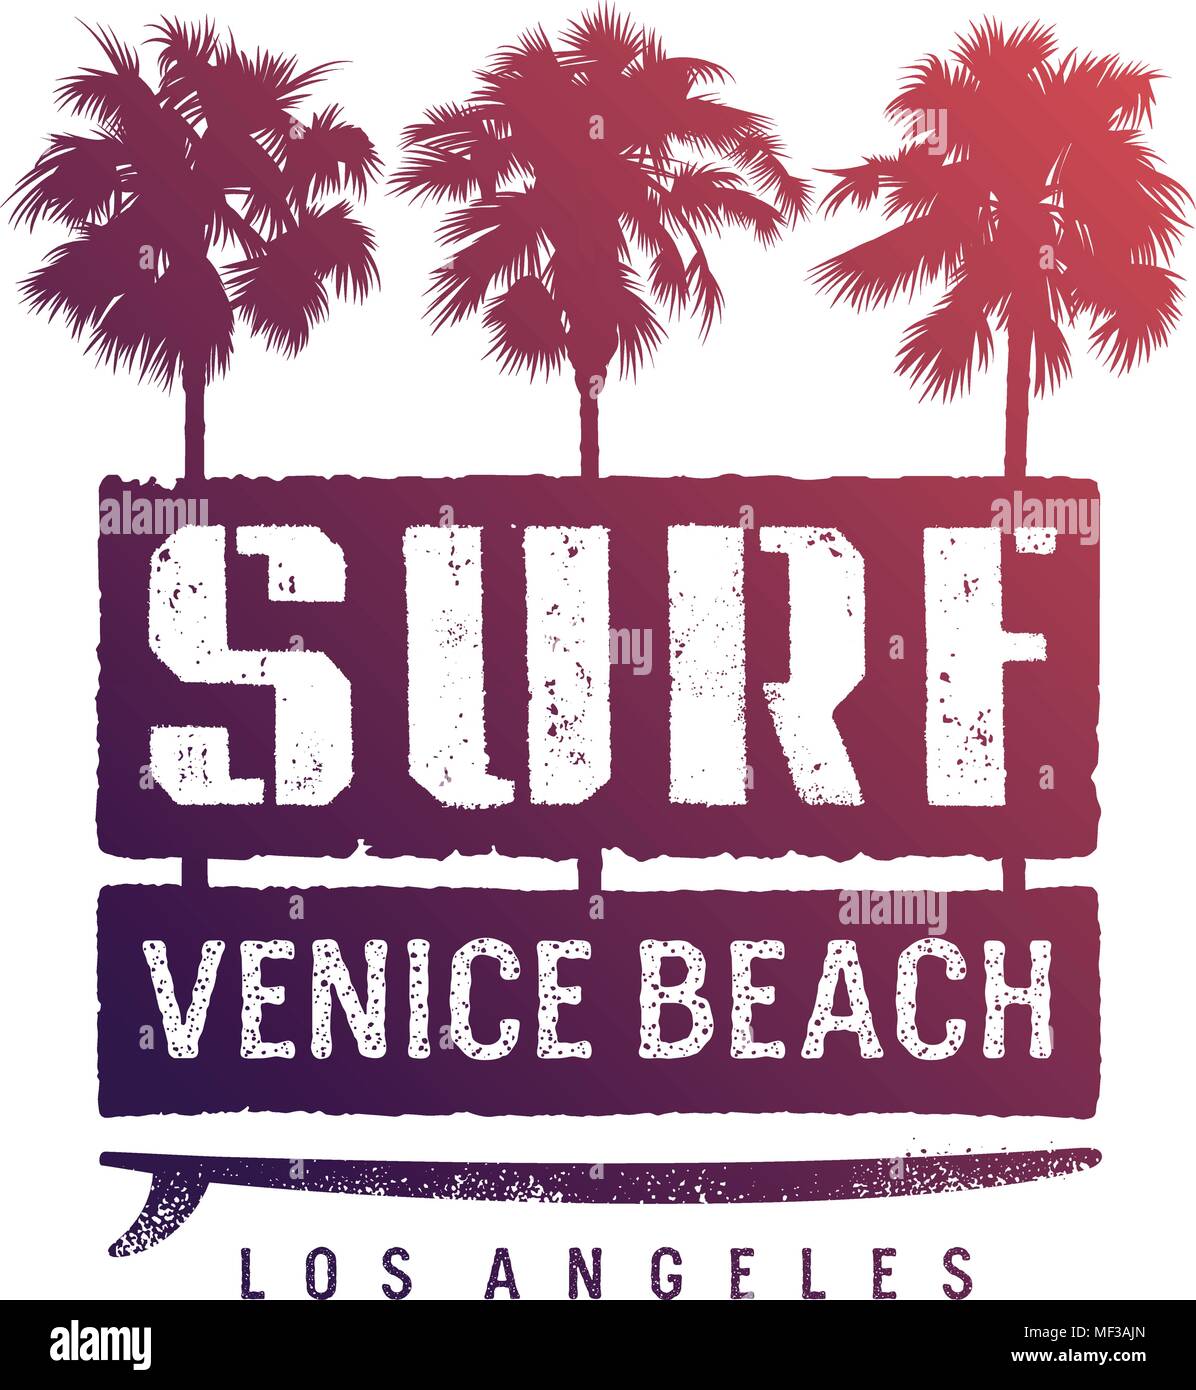 L'oeuvre de surf. Los Angeles California T-shirt apparel imprimer des graphiques. Vintage Graphic Tee Illustration de Vecteur